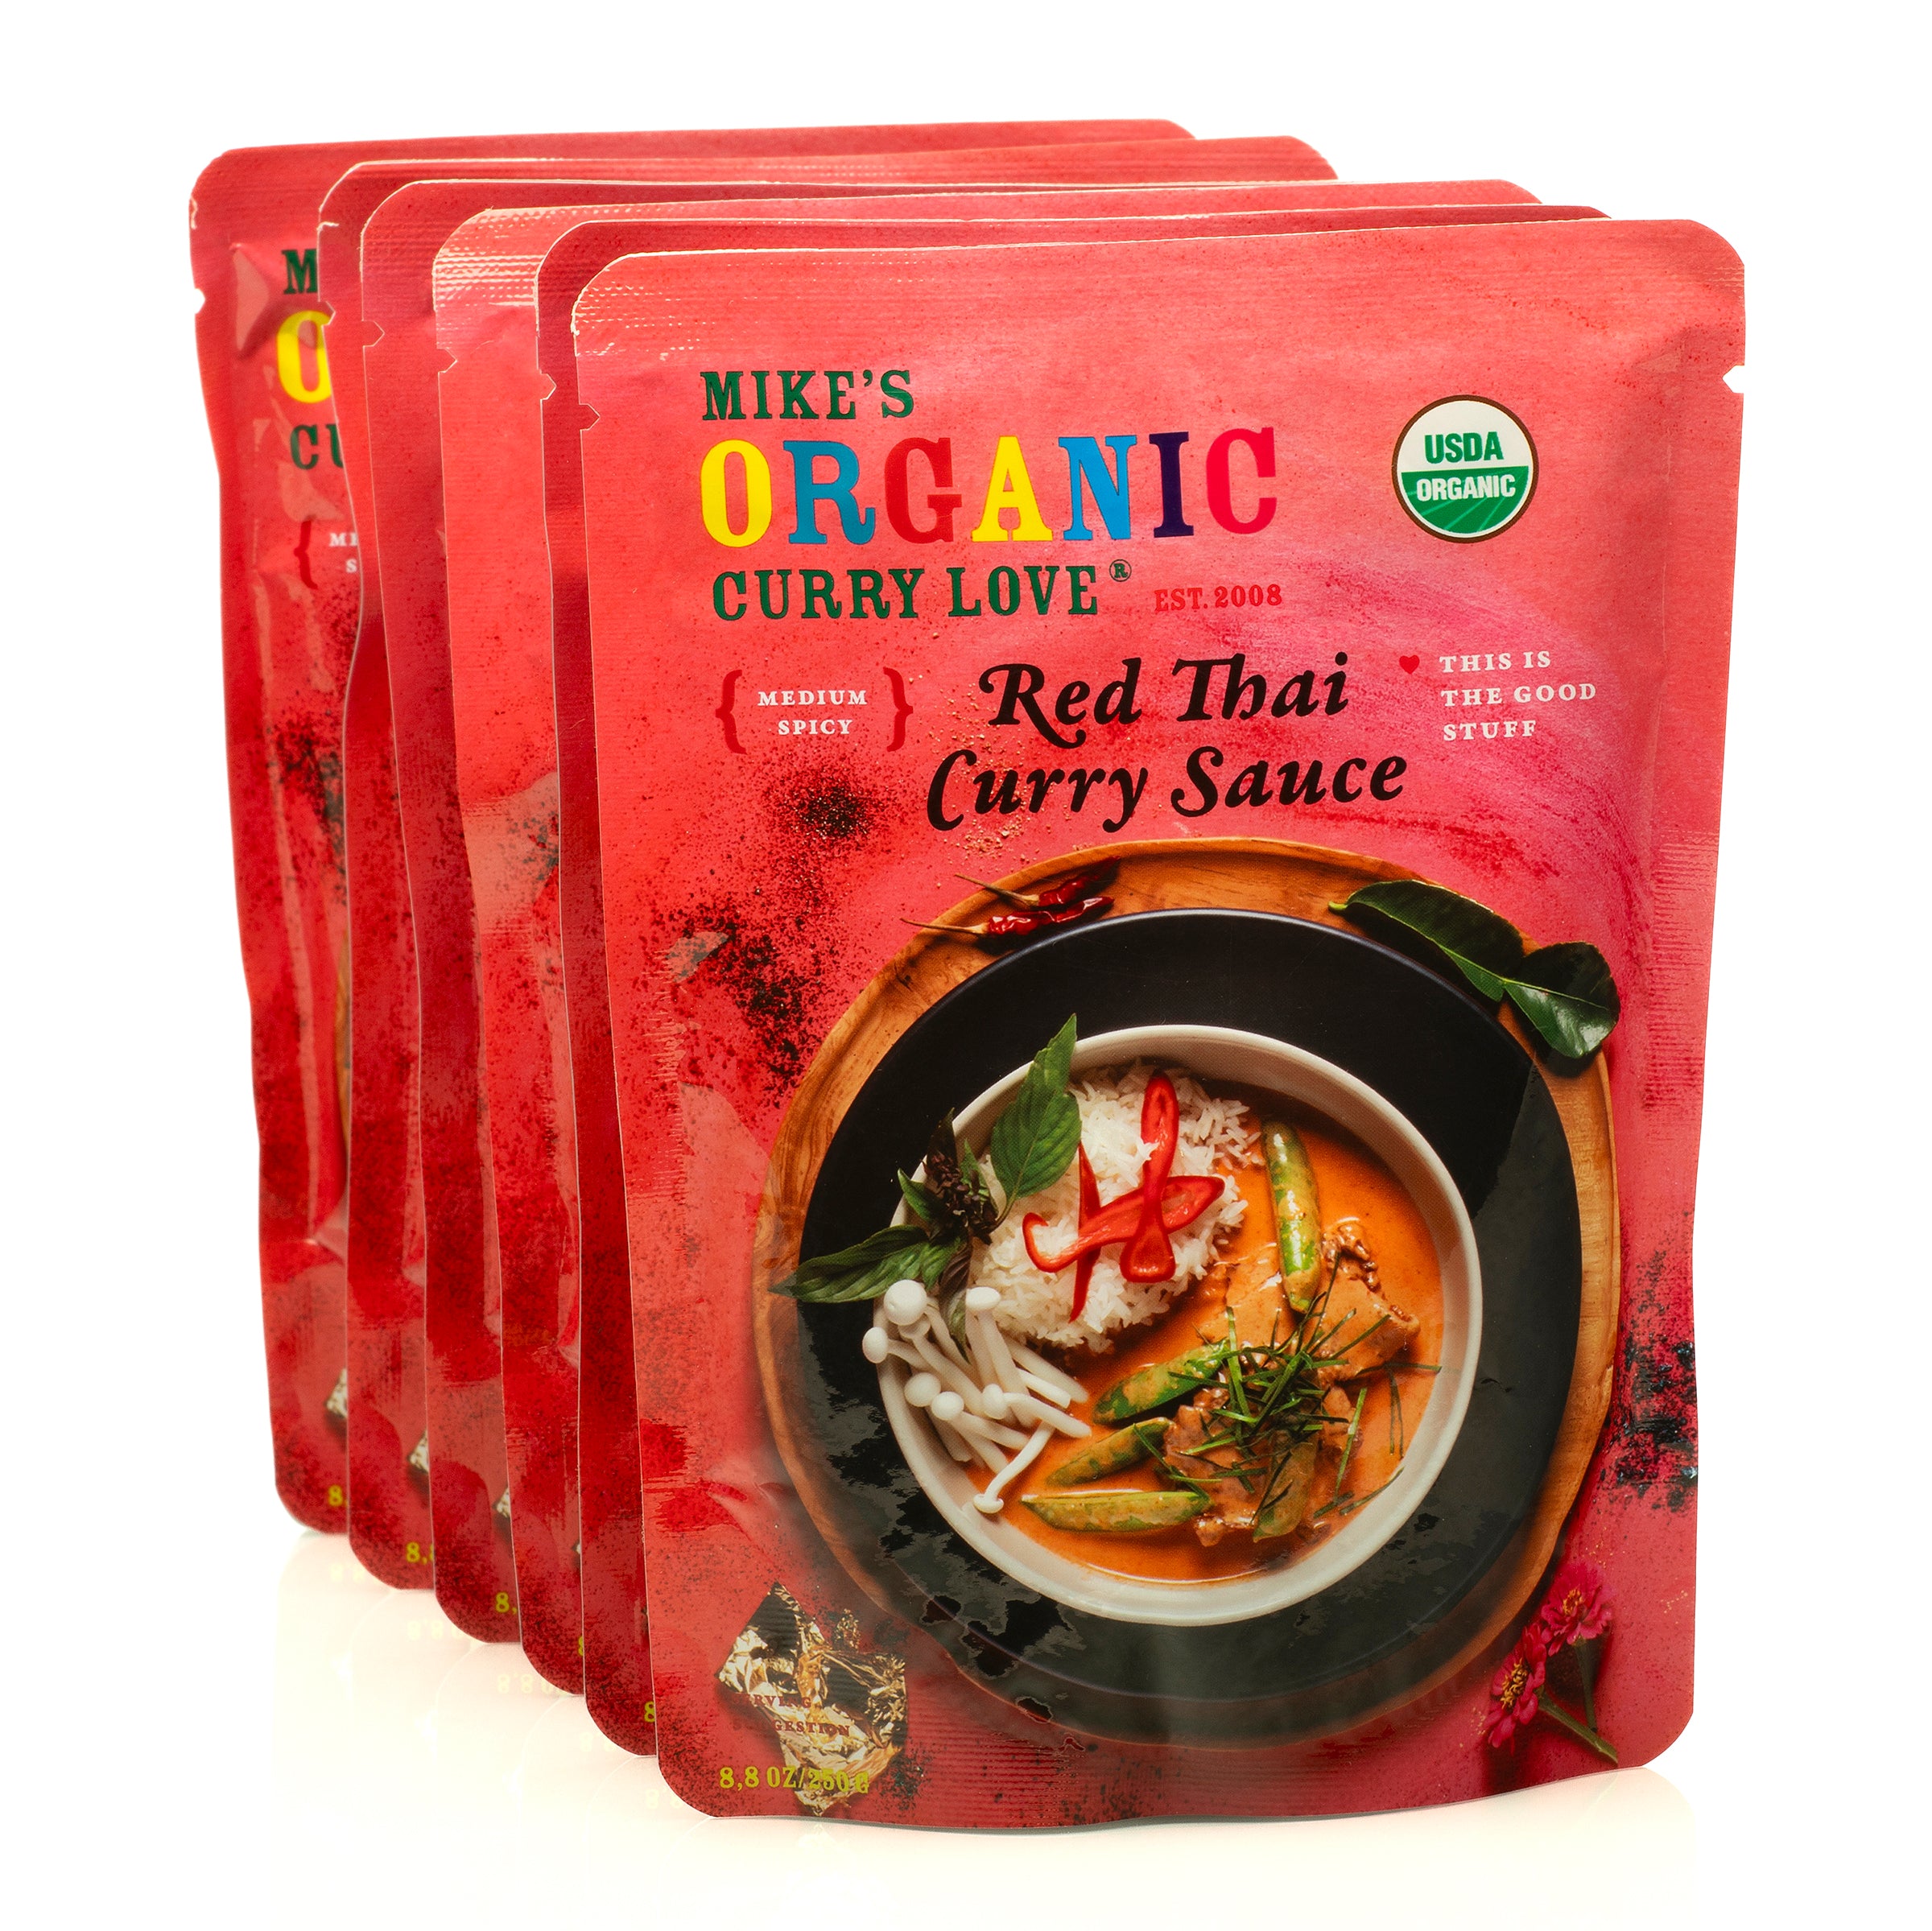 Red Thai Curry Sauce - 6 x 8.8 oz pouches